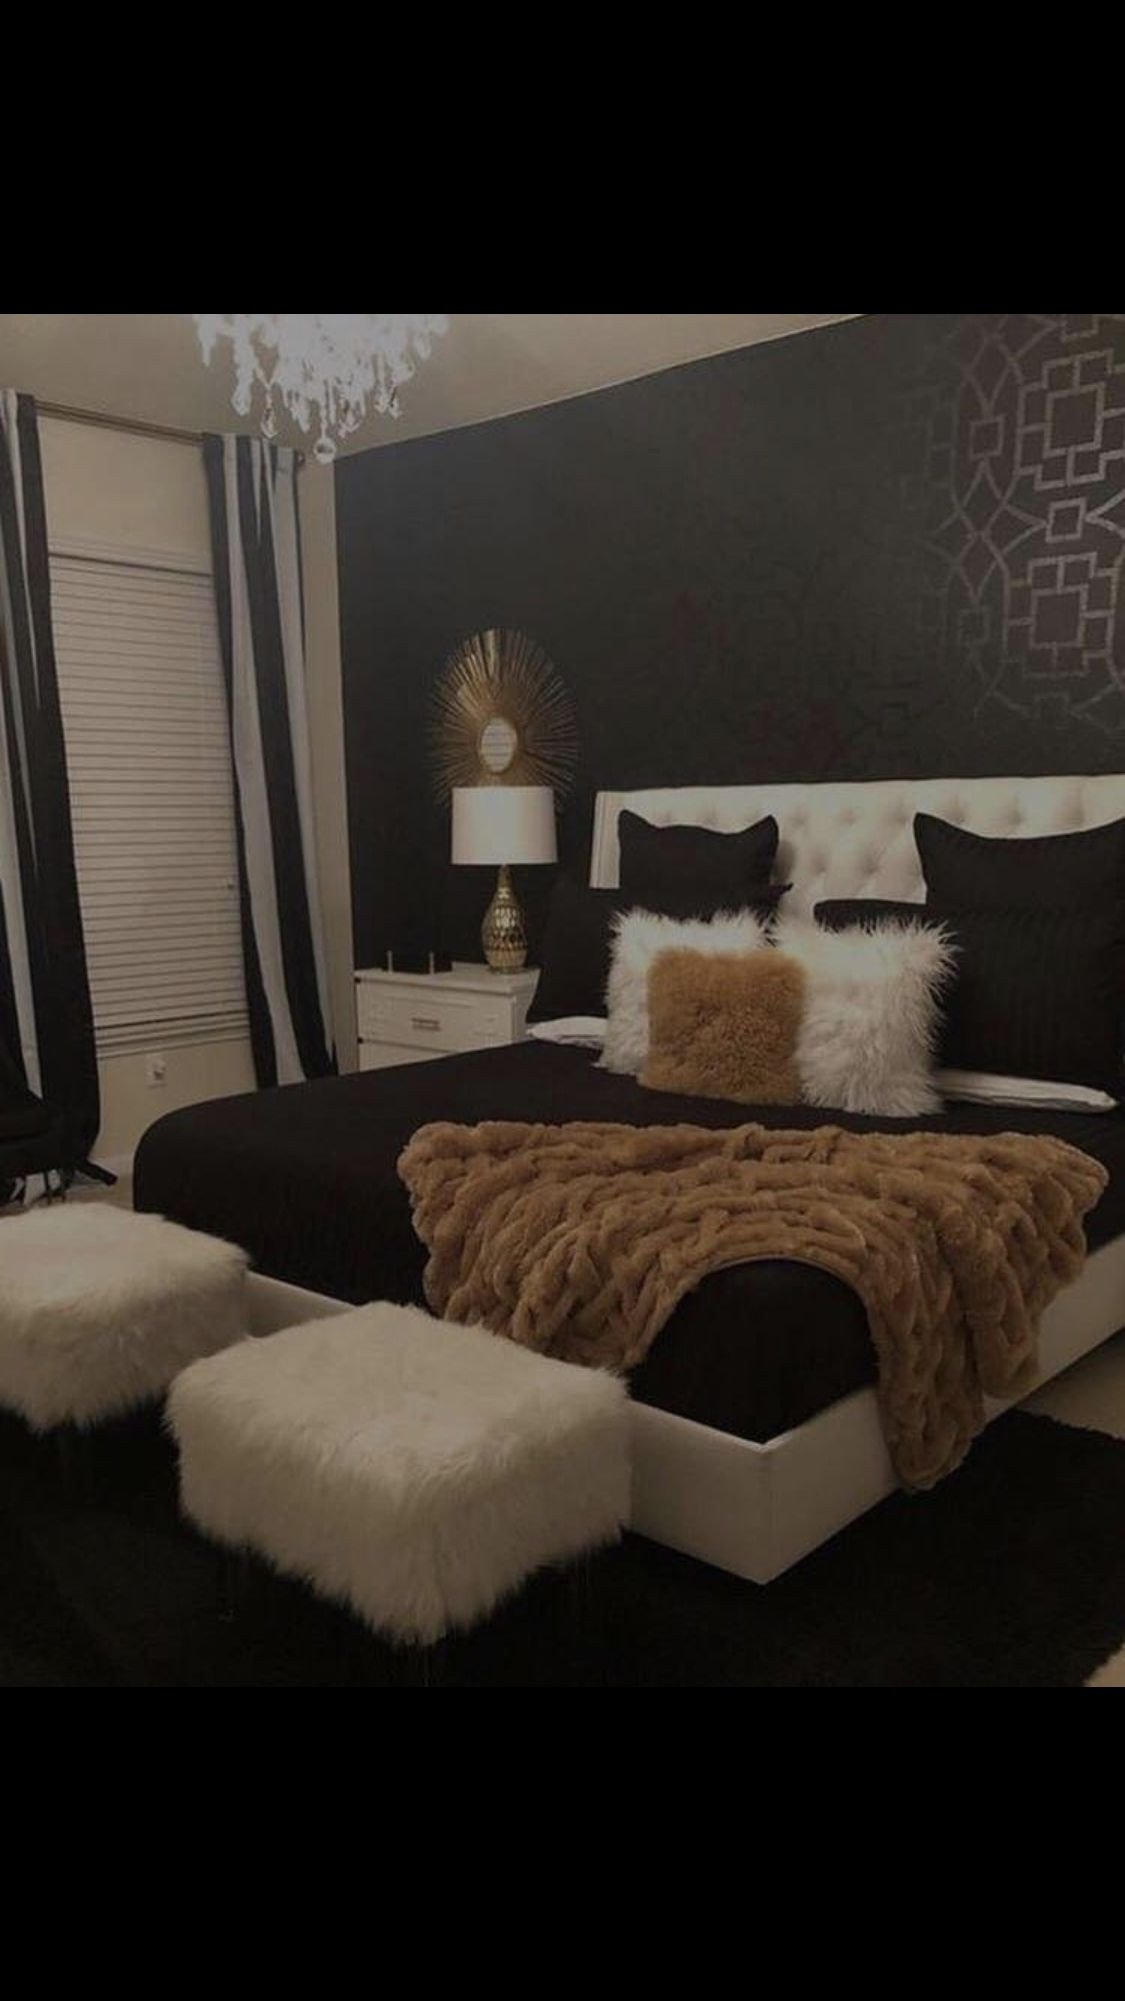 Black and White Teenage Bedroom Elegant Pin by Amour Kiiyah ð¤ On Home Decorating In 2019